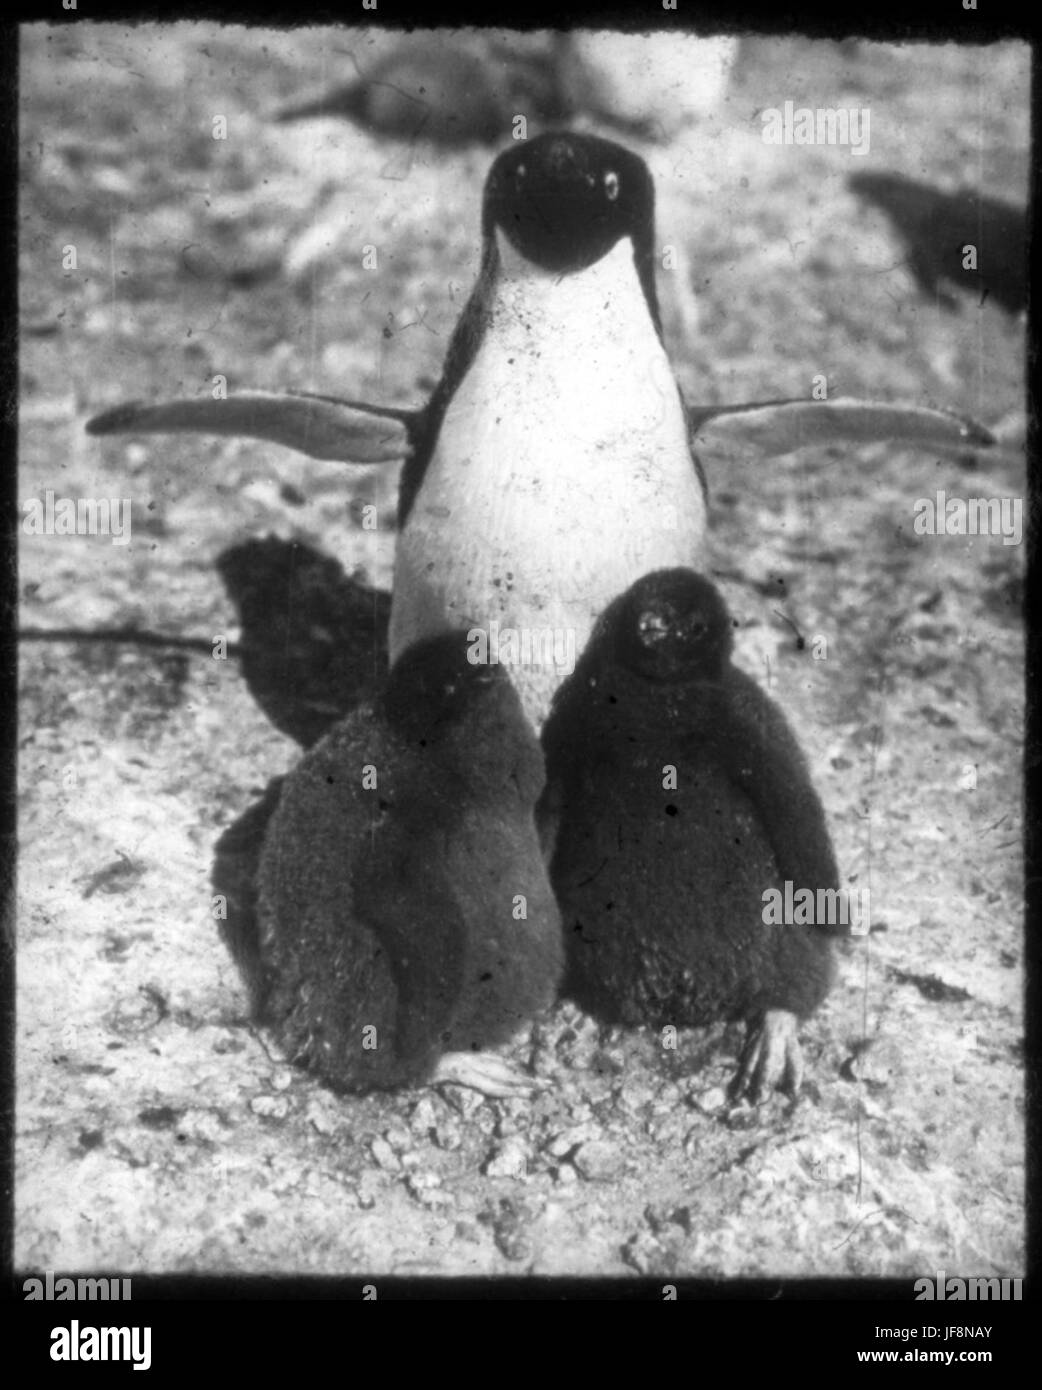 Penguin adultes avec deux poussins 34524519306 o Banque D'Images